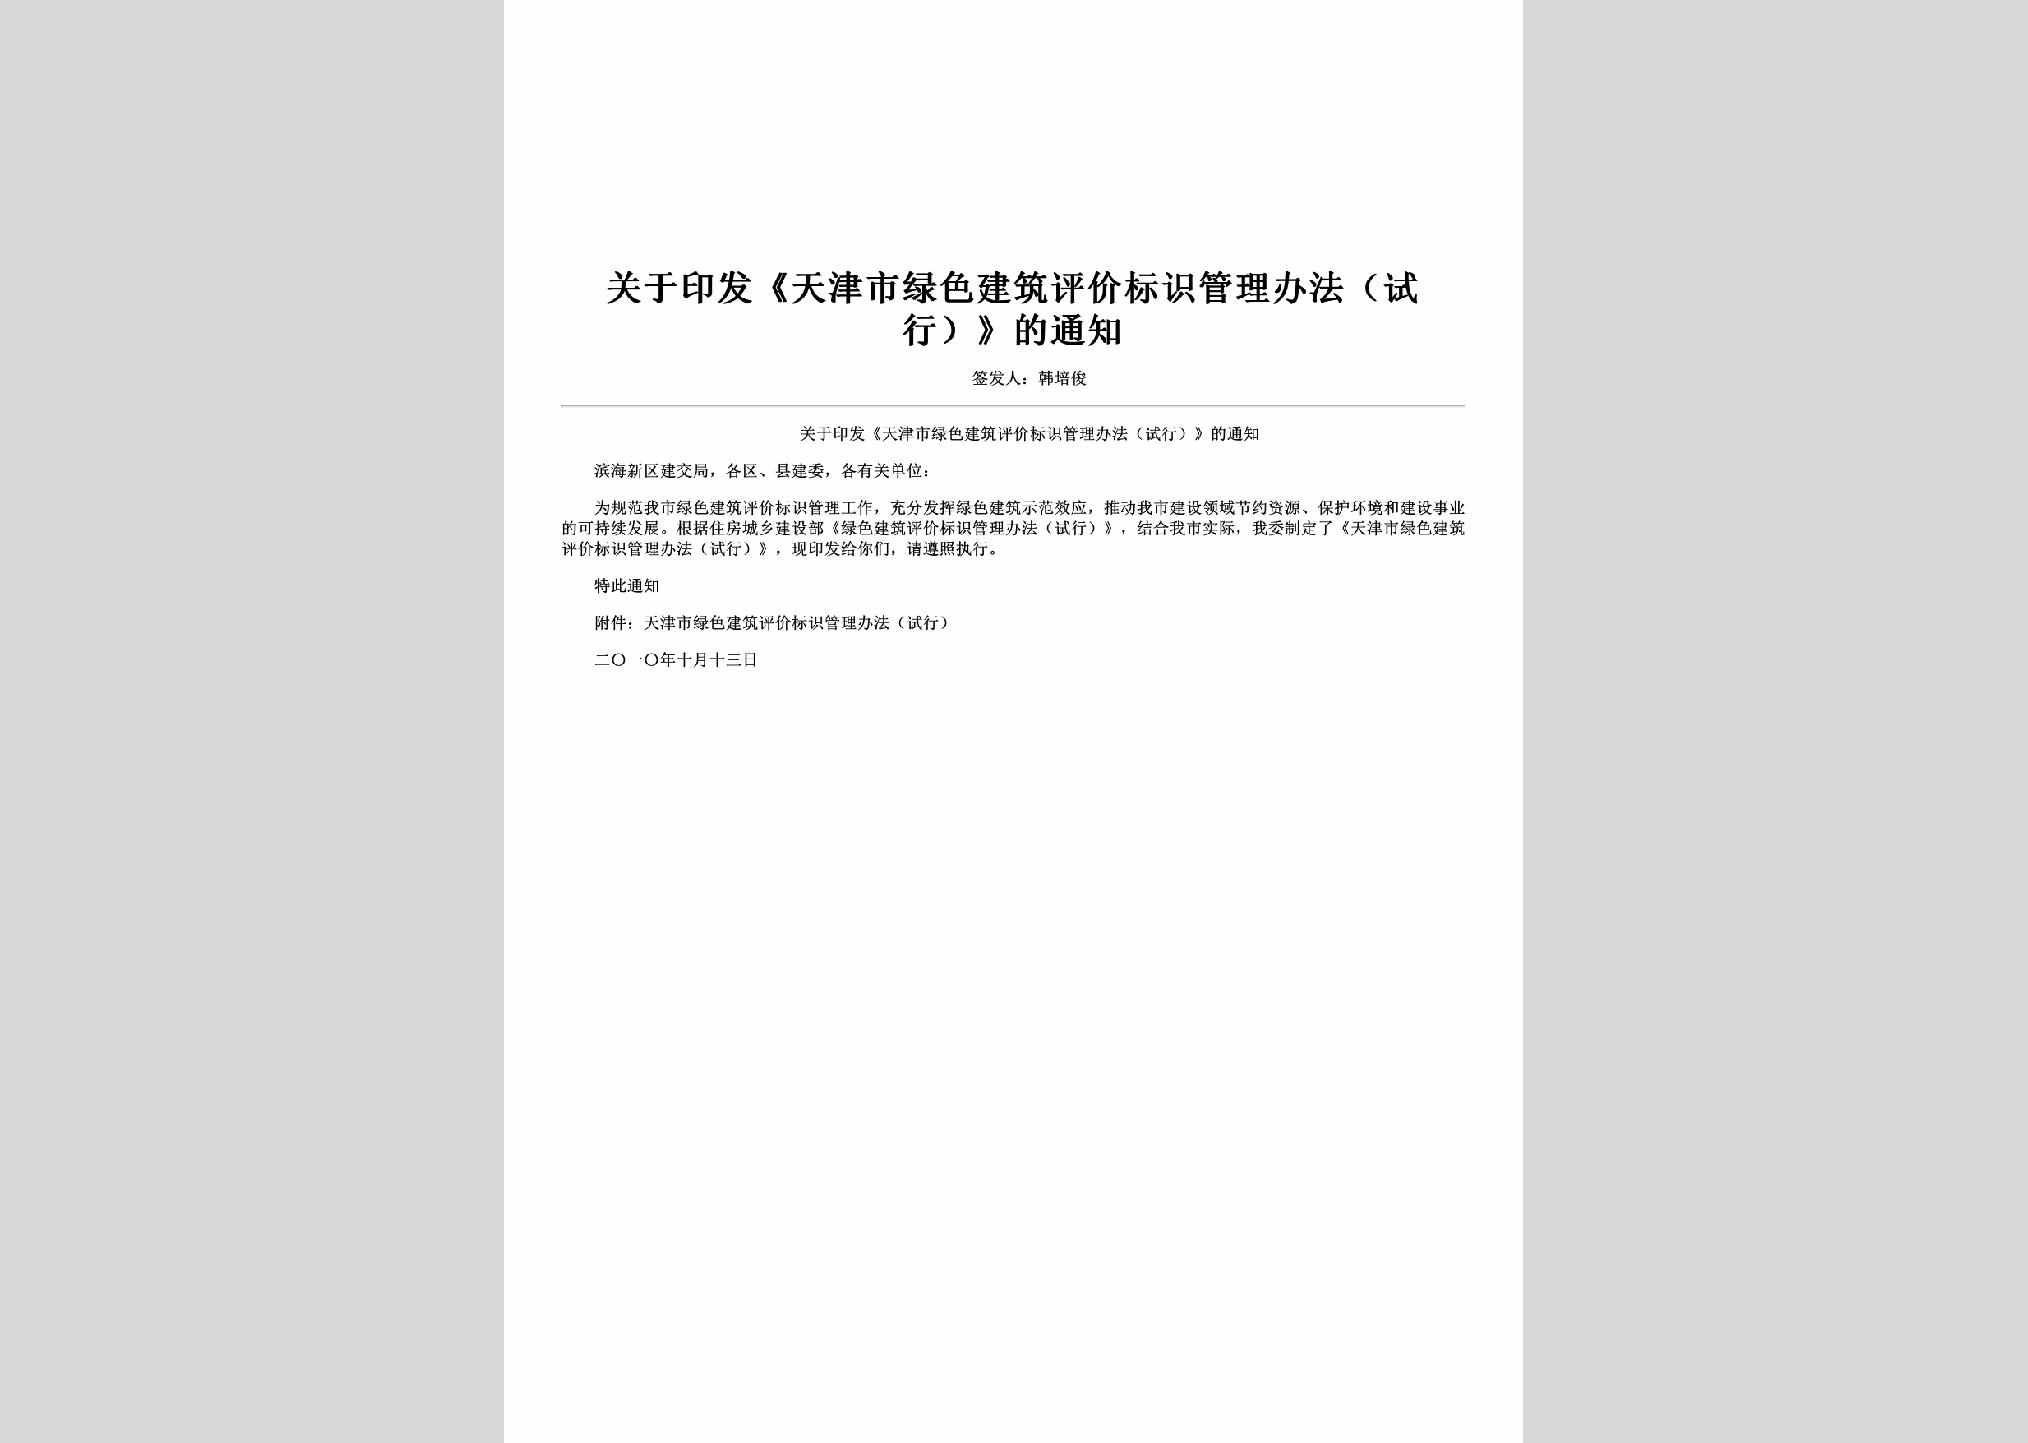 TJ-GYTJSLS-2010：关于印发《天津市绿色建筑评价标识管理办法（试行）》的通知